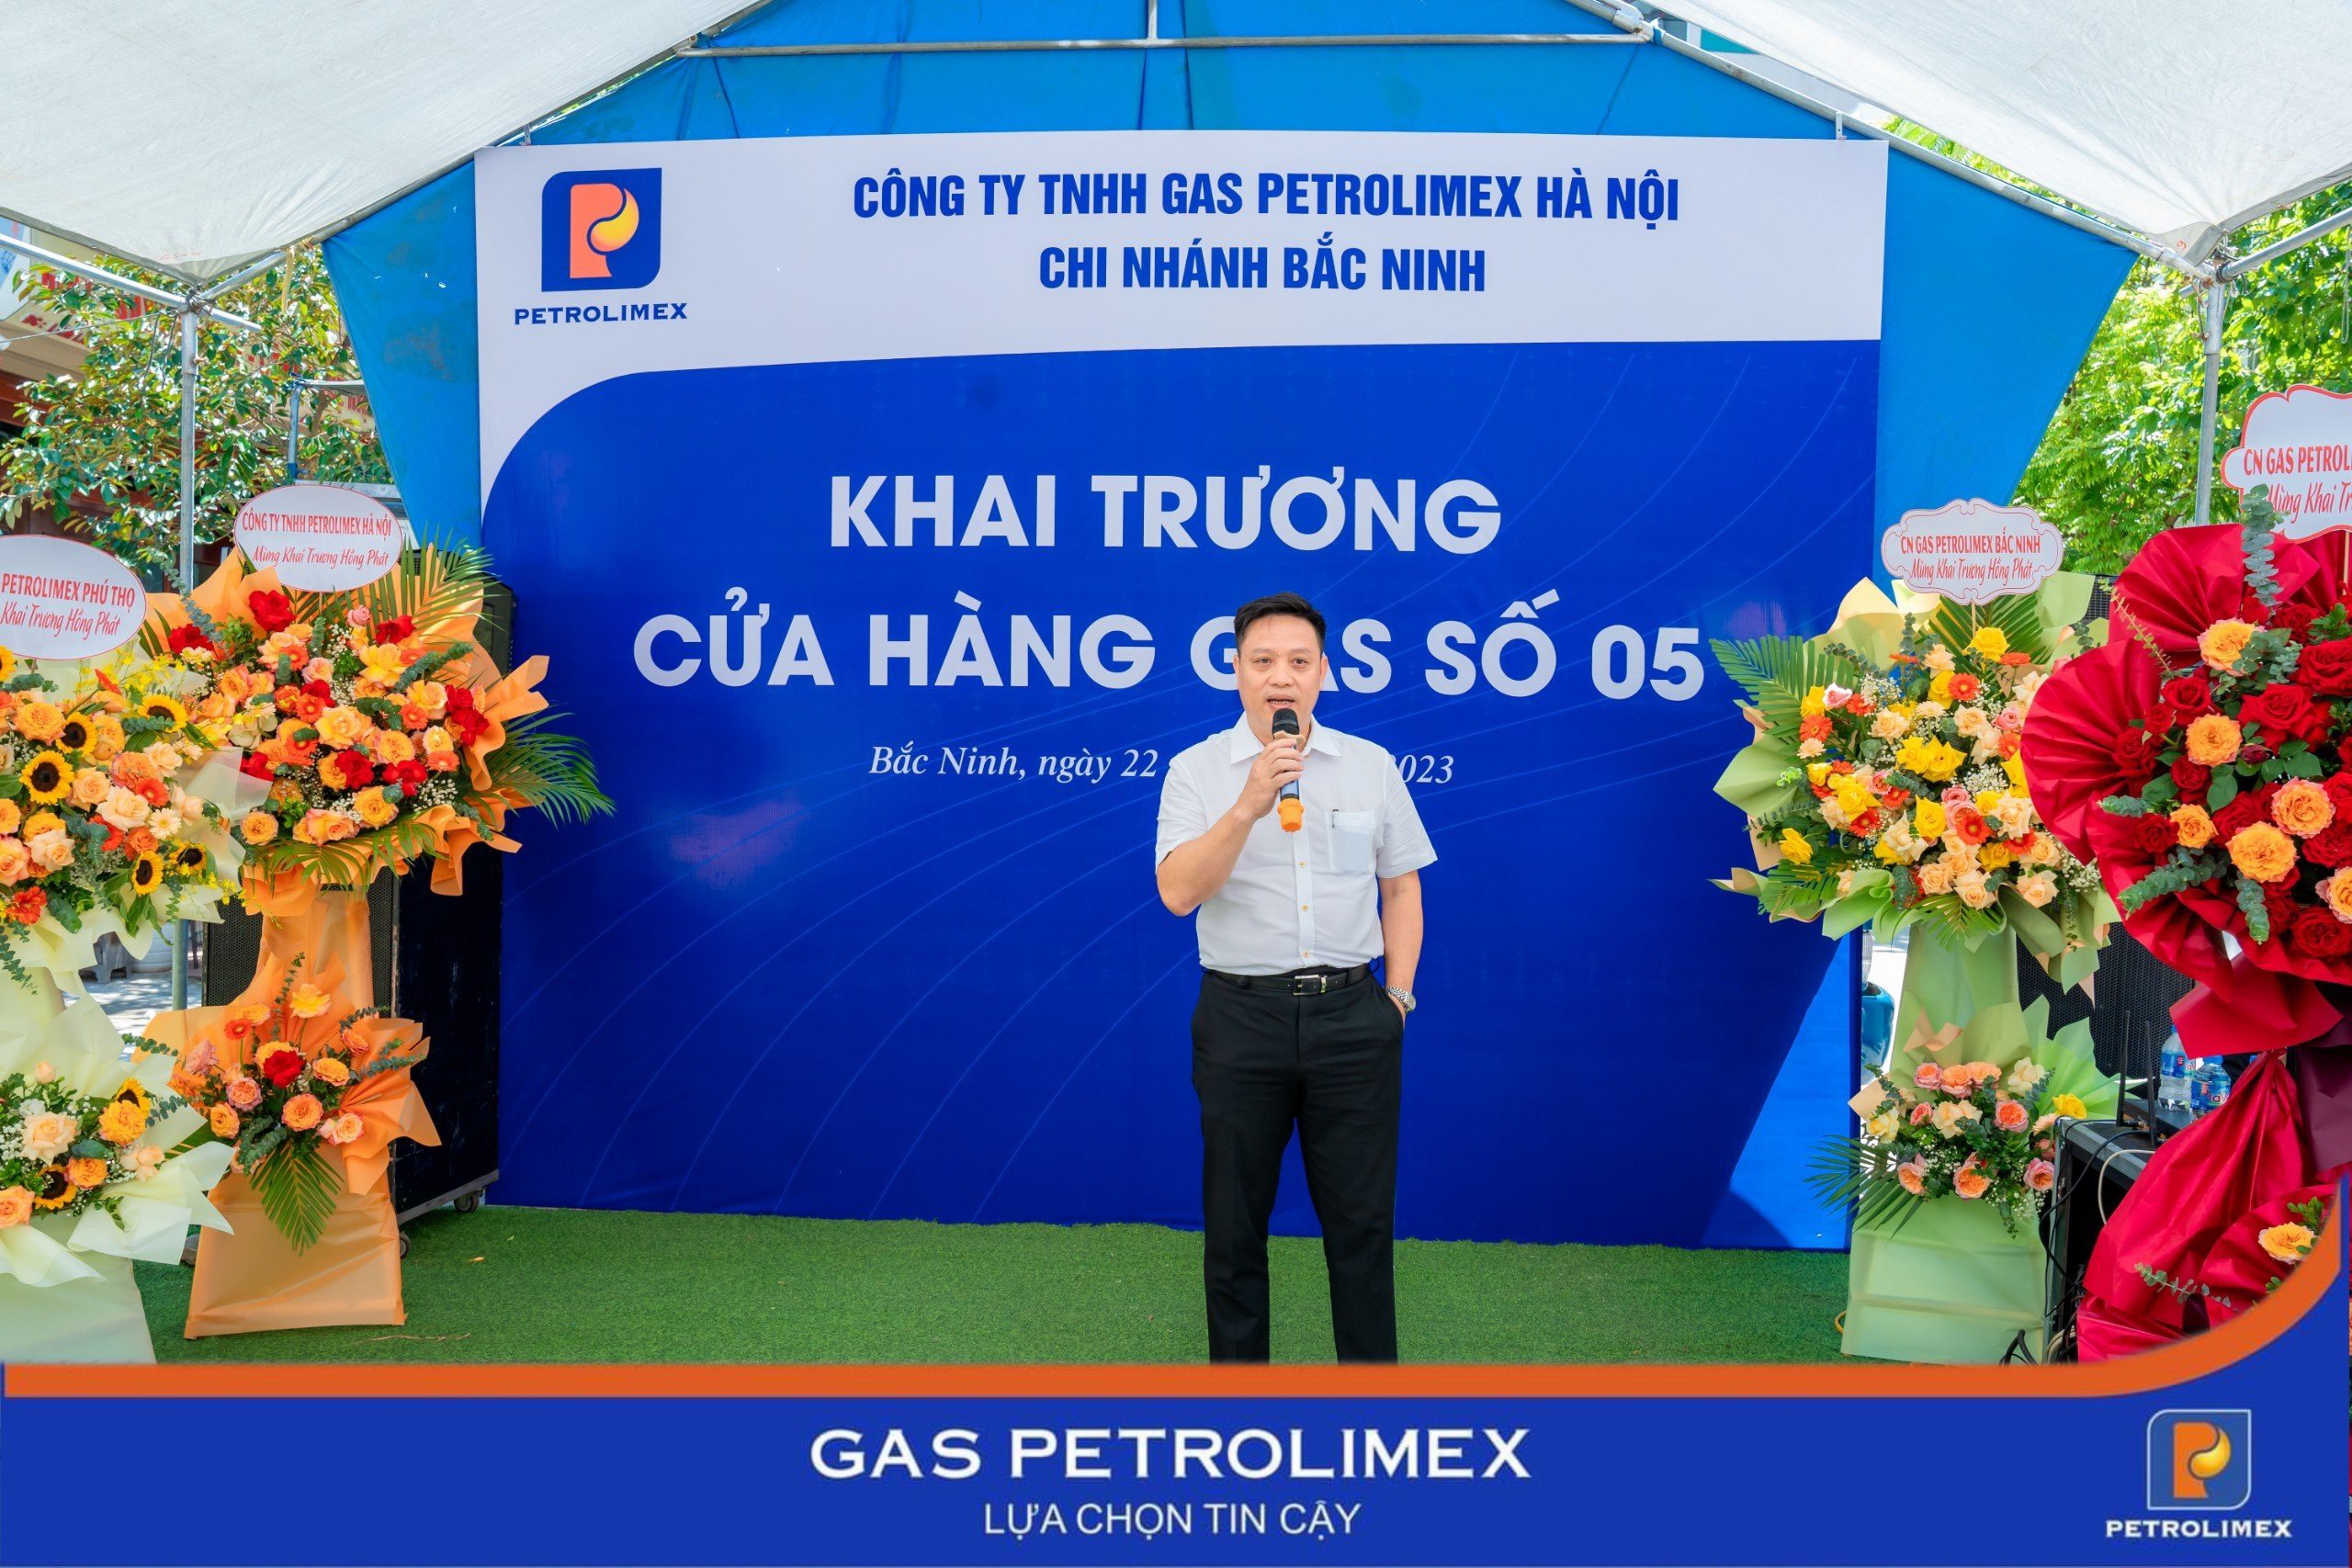 Gas Petrolimex